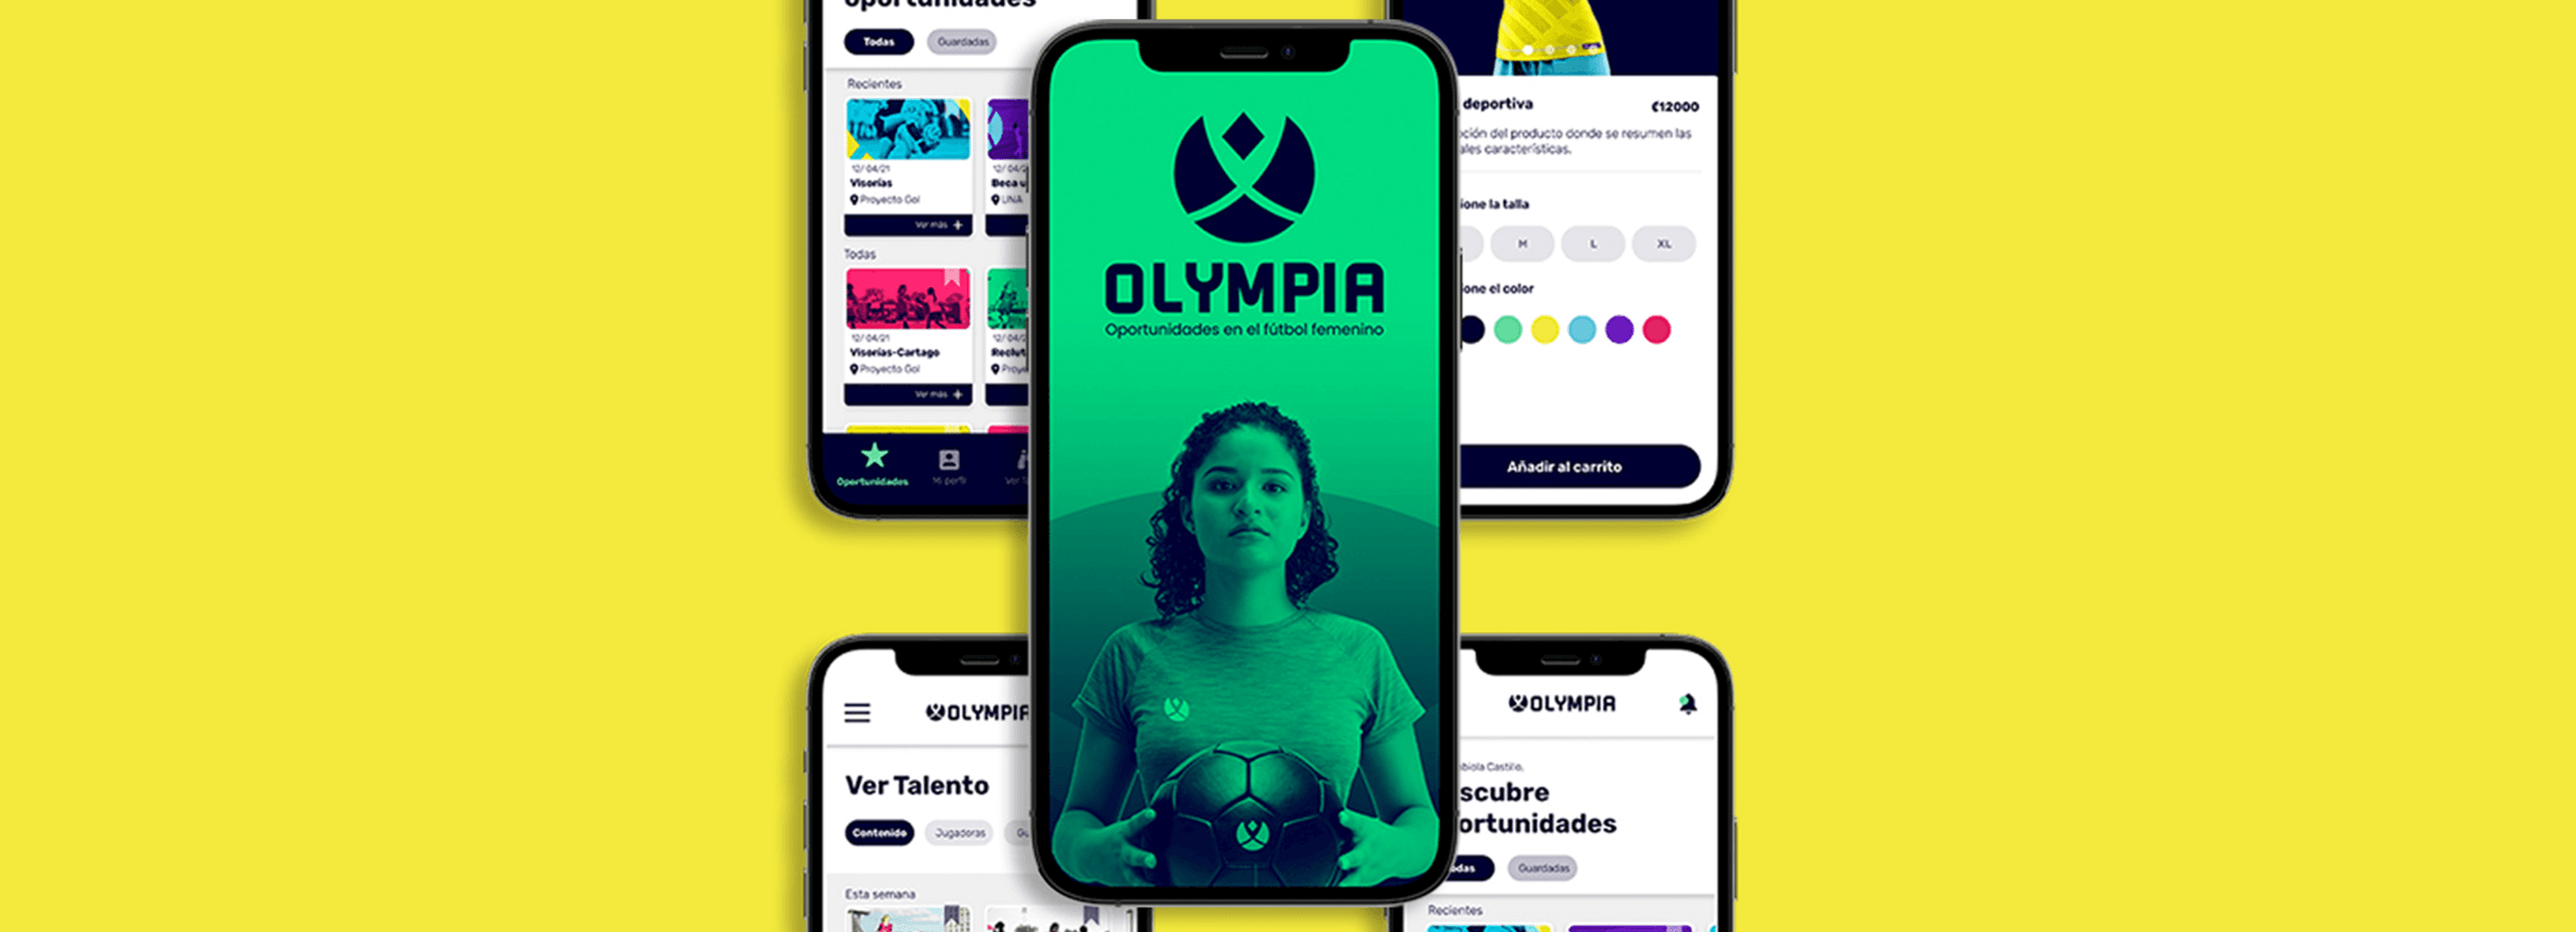 Un collage de smartphones que muestran varias pantallas de la aplicación OLYMPIA, centrada en proporcionar una plataforma para oportunidades en el fútbol femenino.